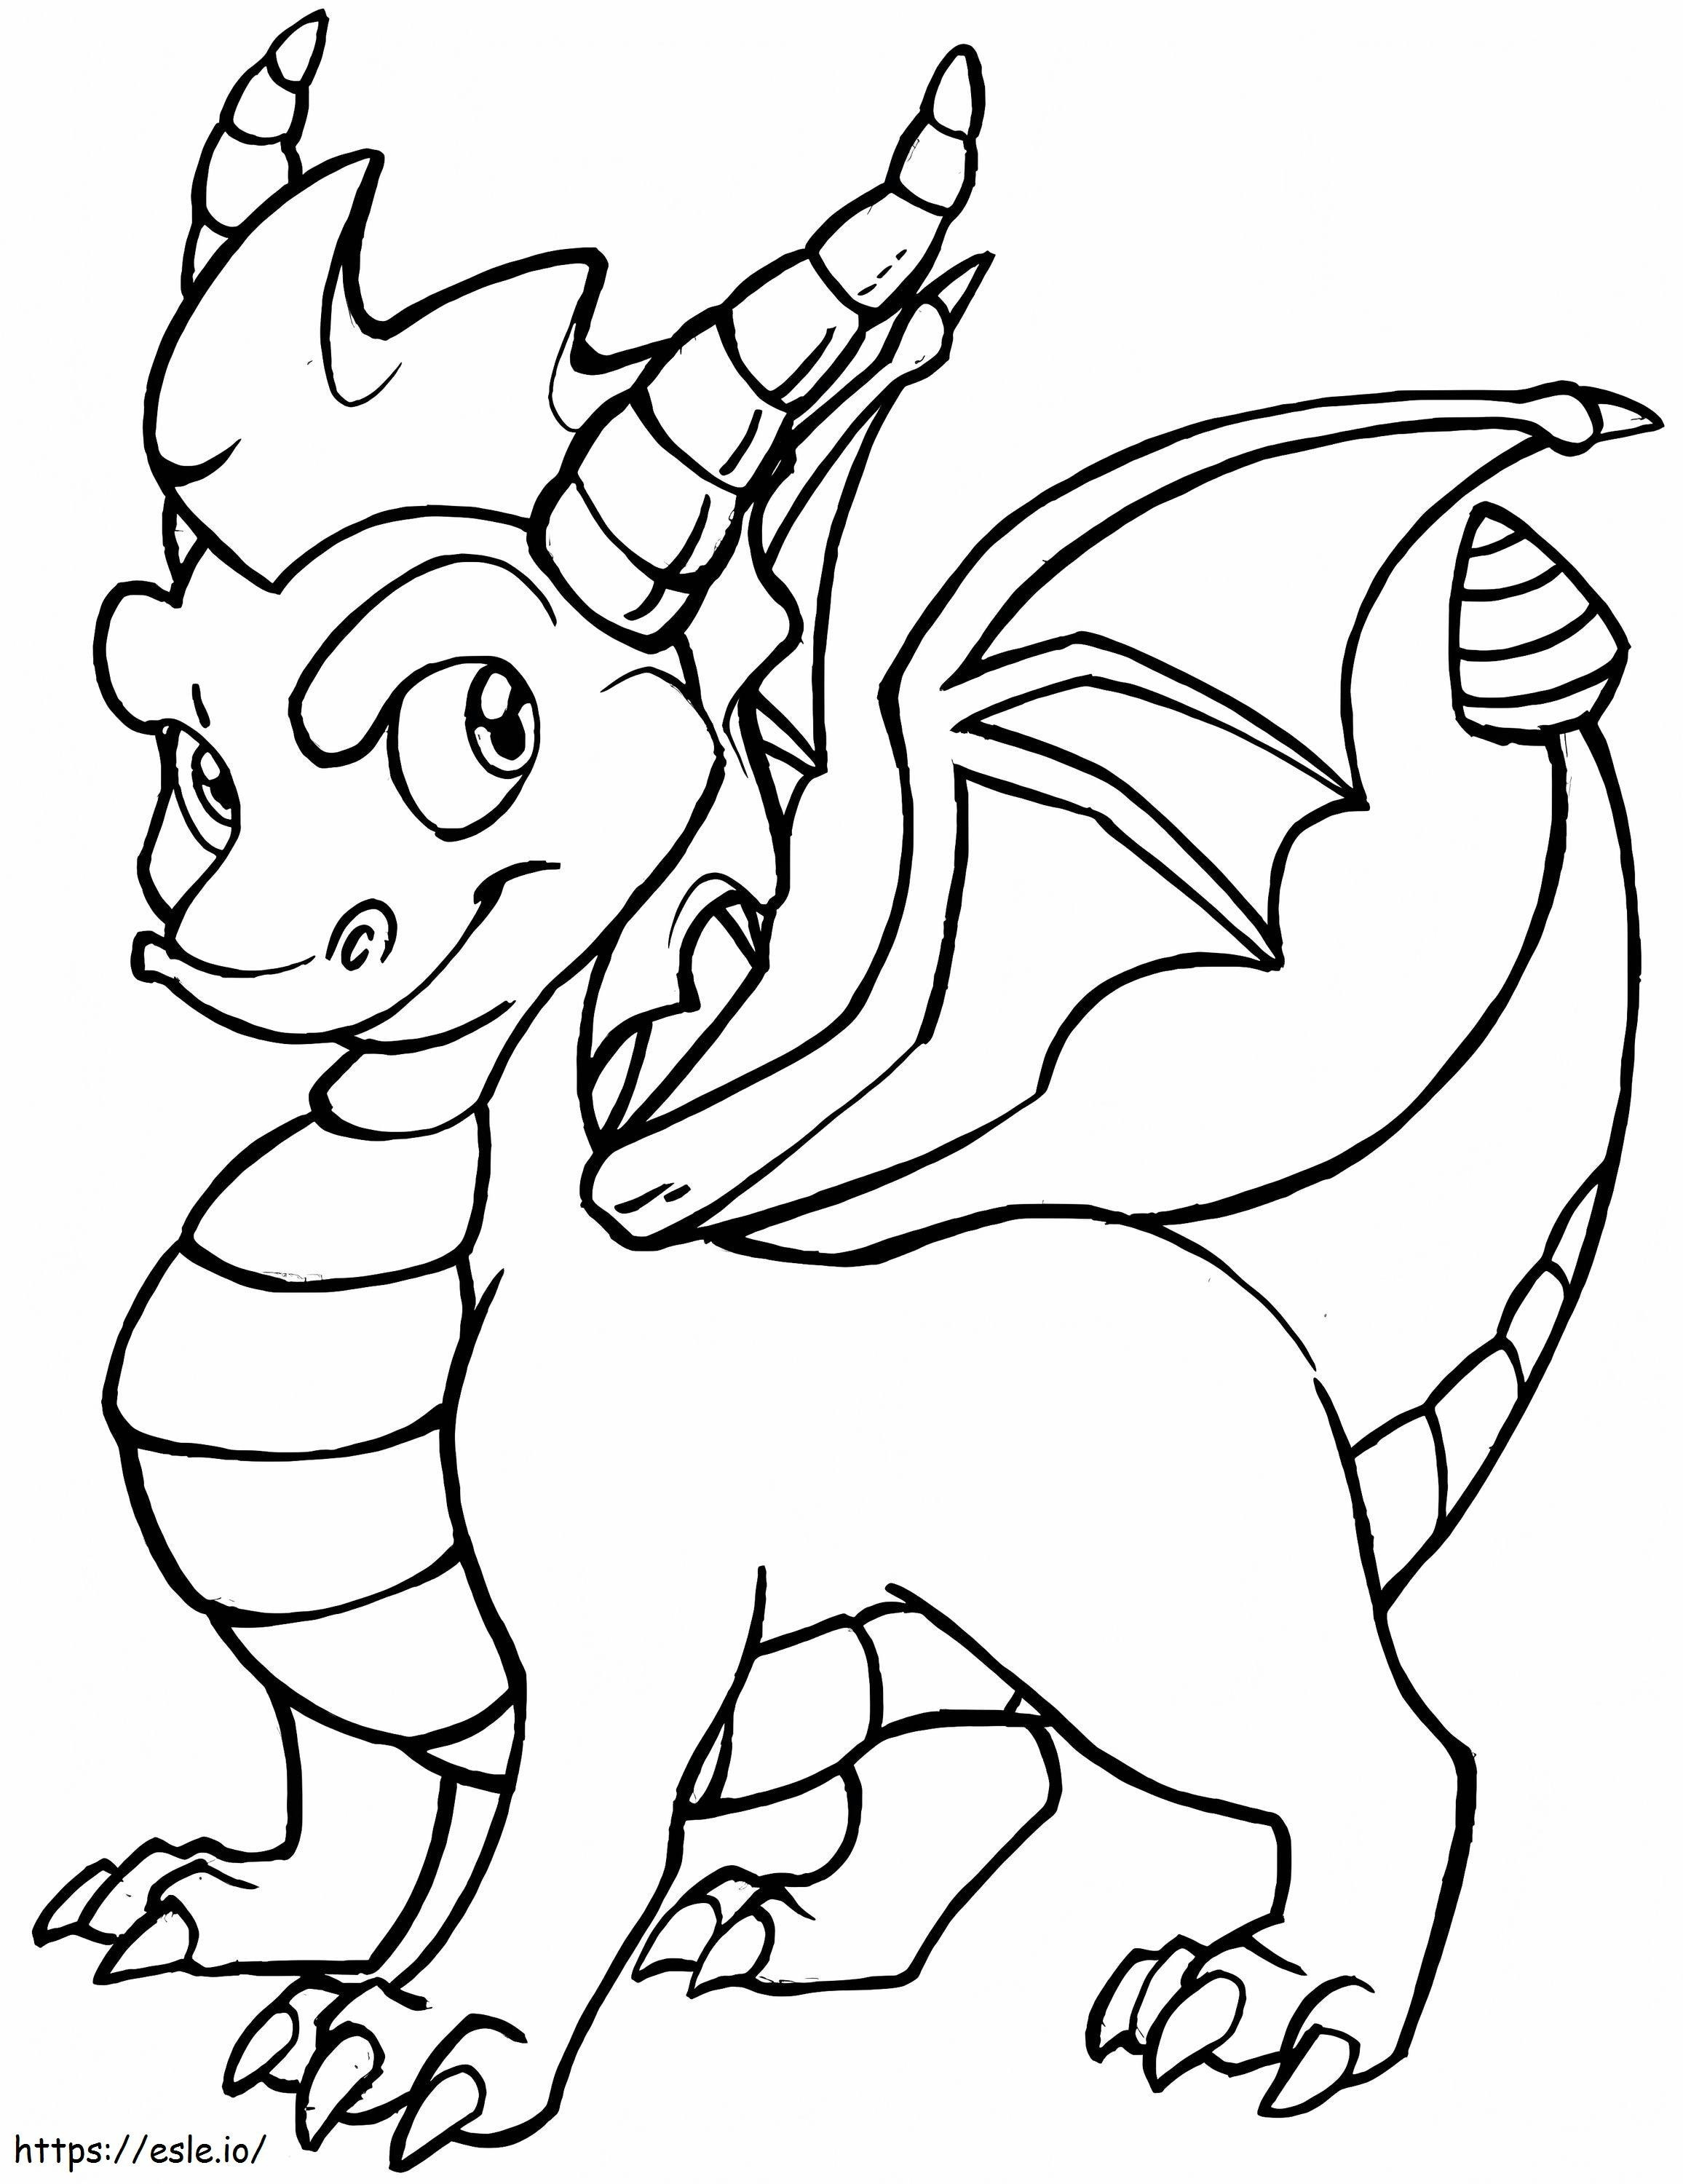 Coloriage Bébé Dragon à imprimer dessin